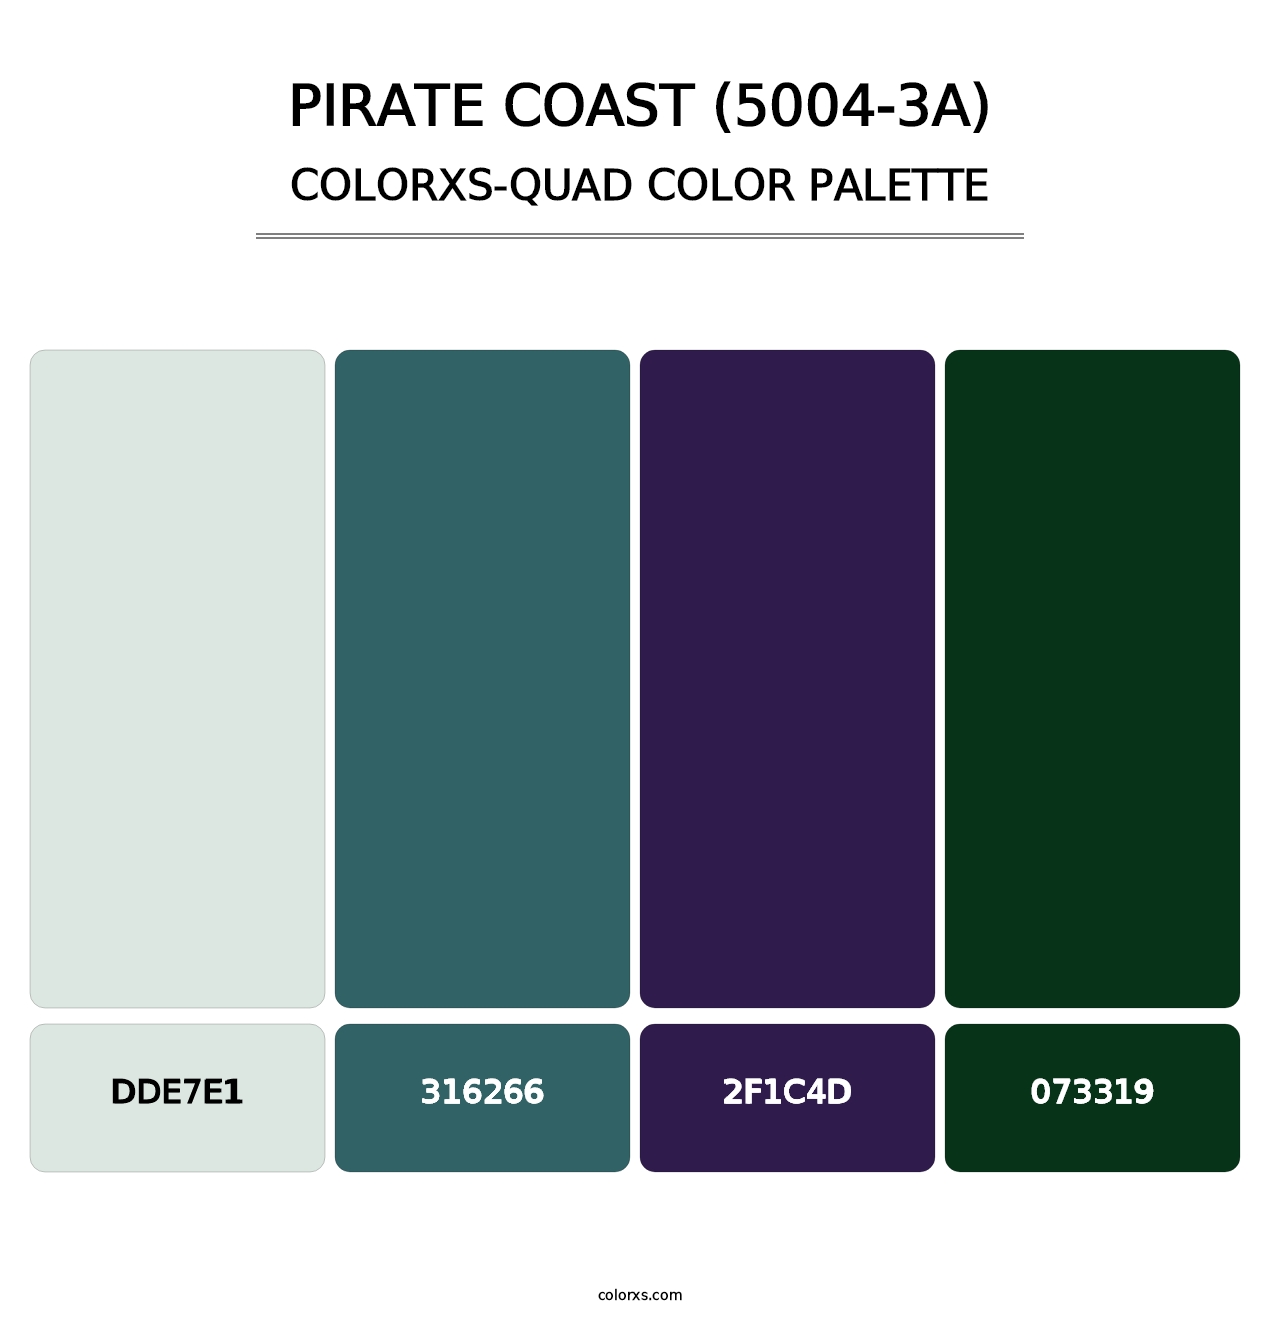 Pirate Coast (5004-3A) - Colorxs Quad Palette